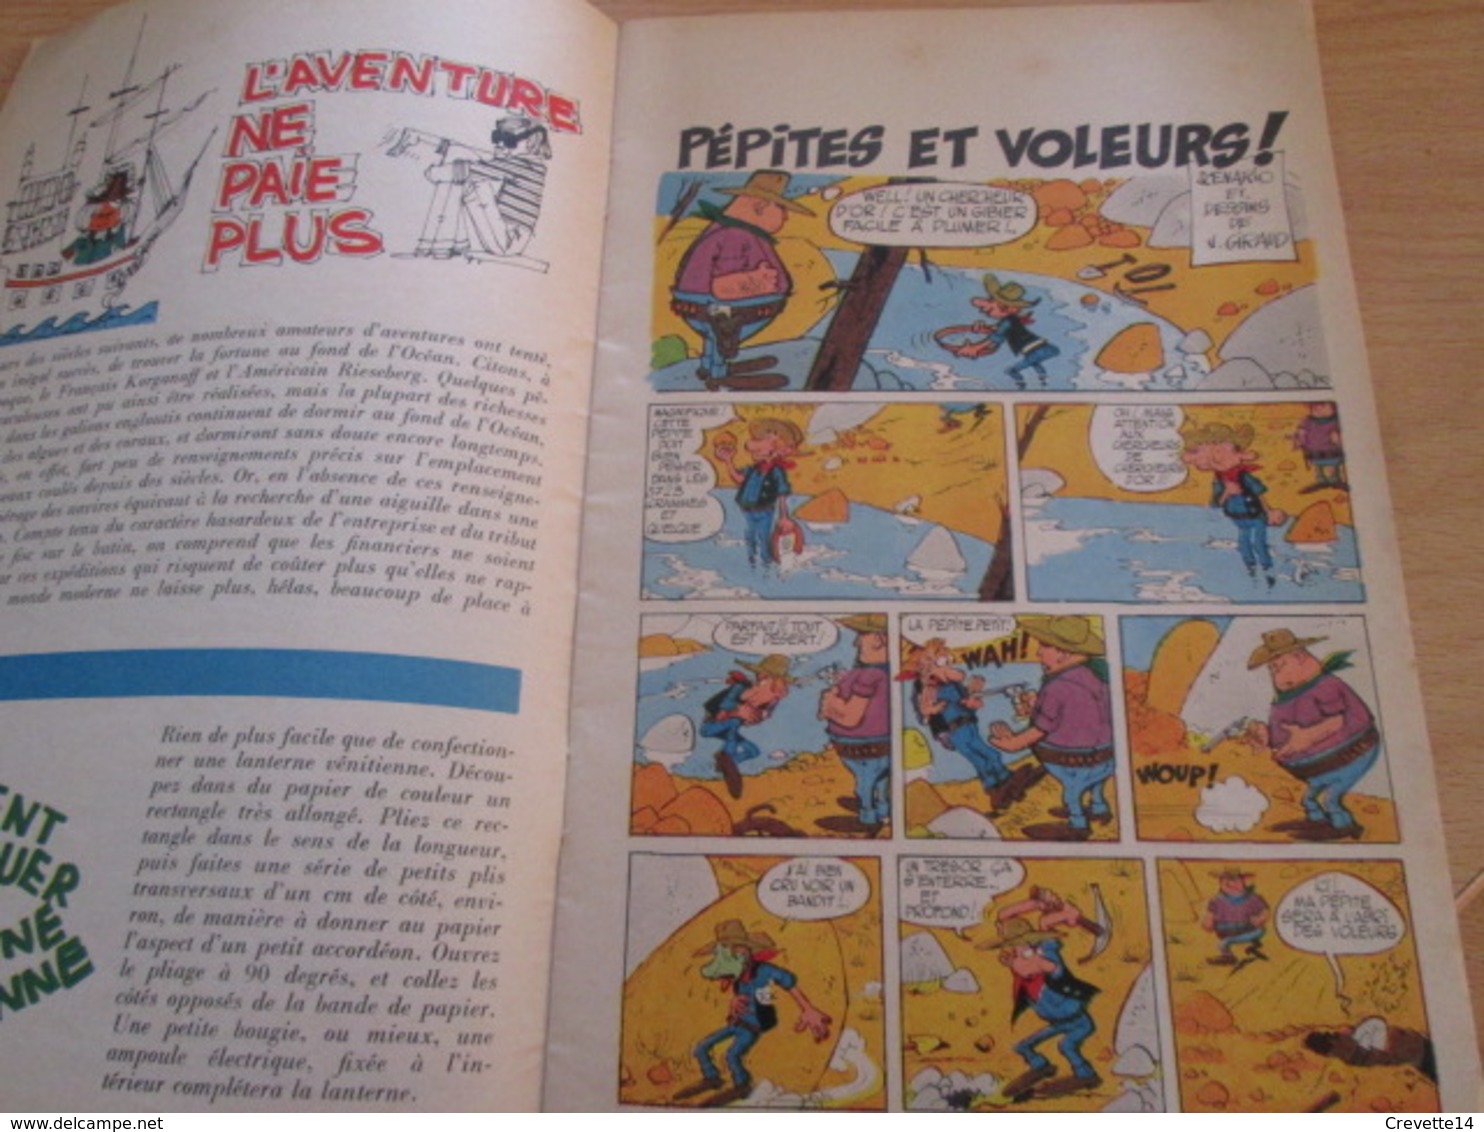 Petite Revue Publicitaire A5 Année 1966 N°5 TOTAL JOURNAL Incluant BD Inédité De JIJE GIRAUD Vu à 40€ Chez I-B - Objets Publicitaires